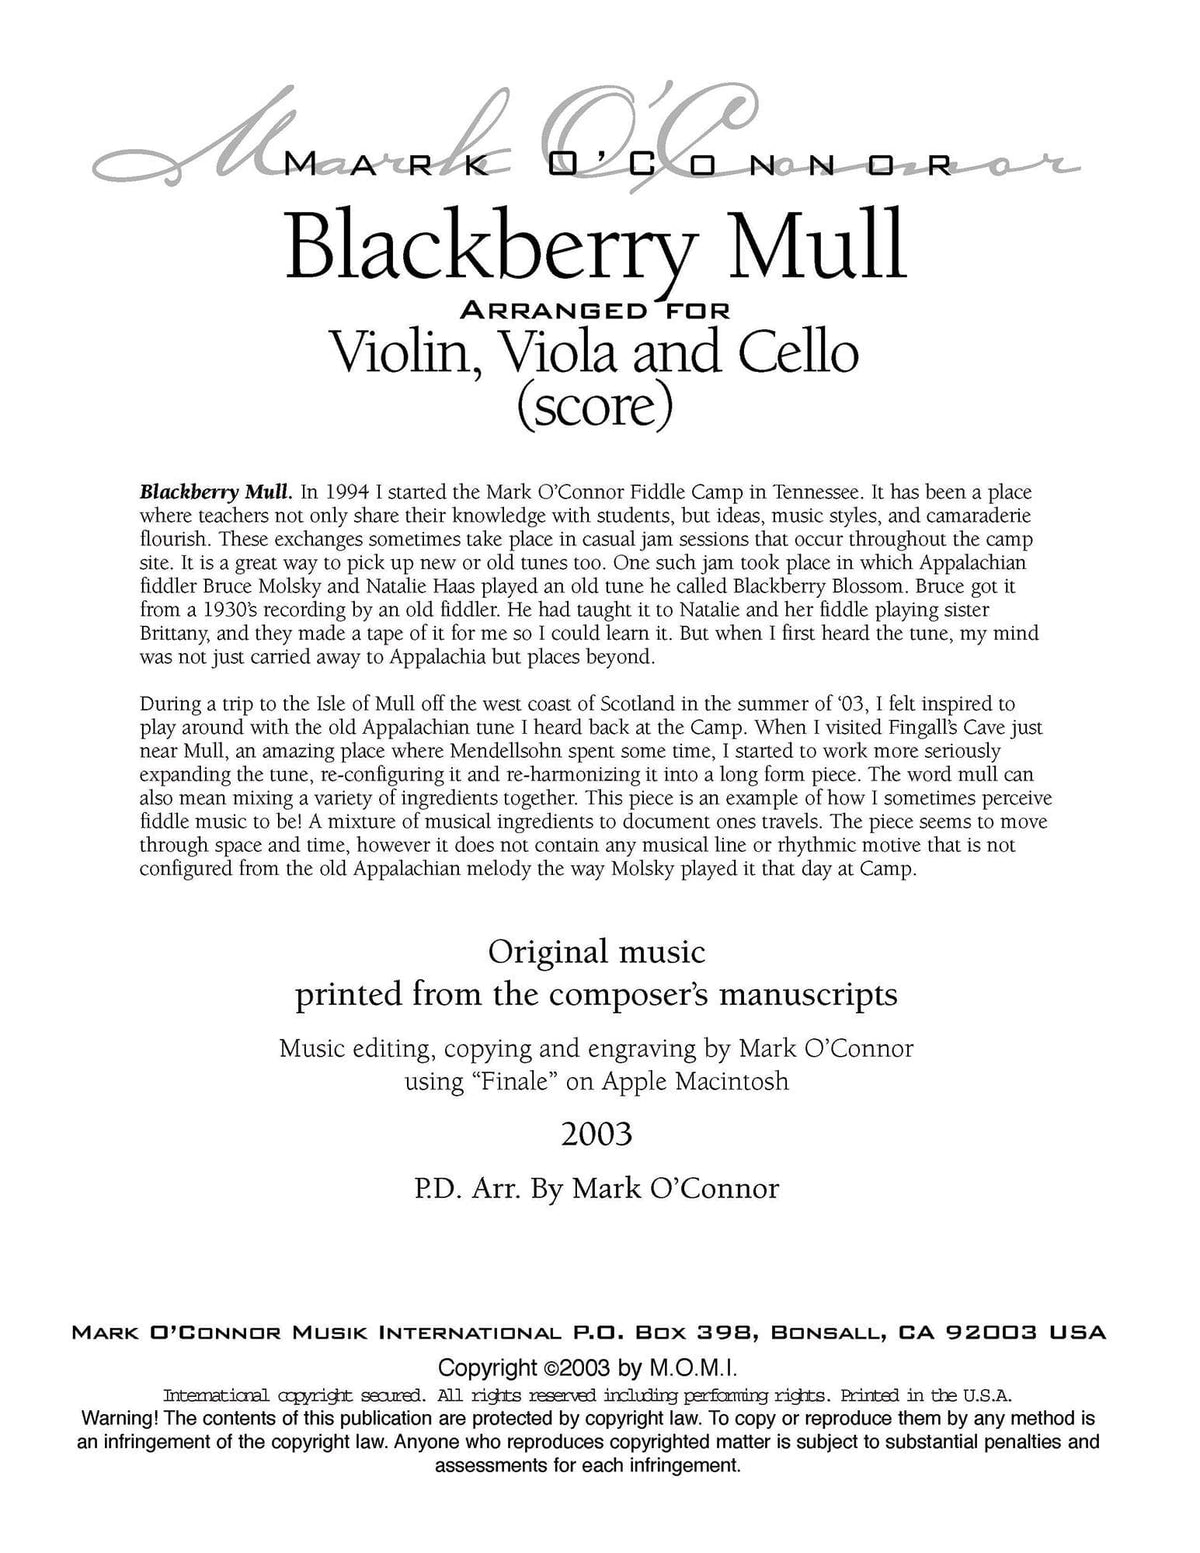 O'Connor, Mark - Blackberry Mull for Violin, Viola, and Cello - Score - Digital Download